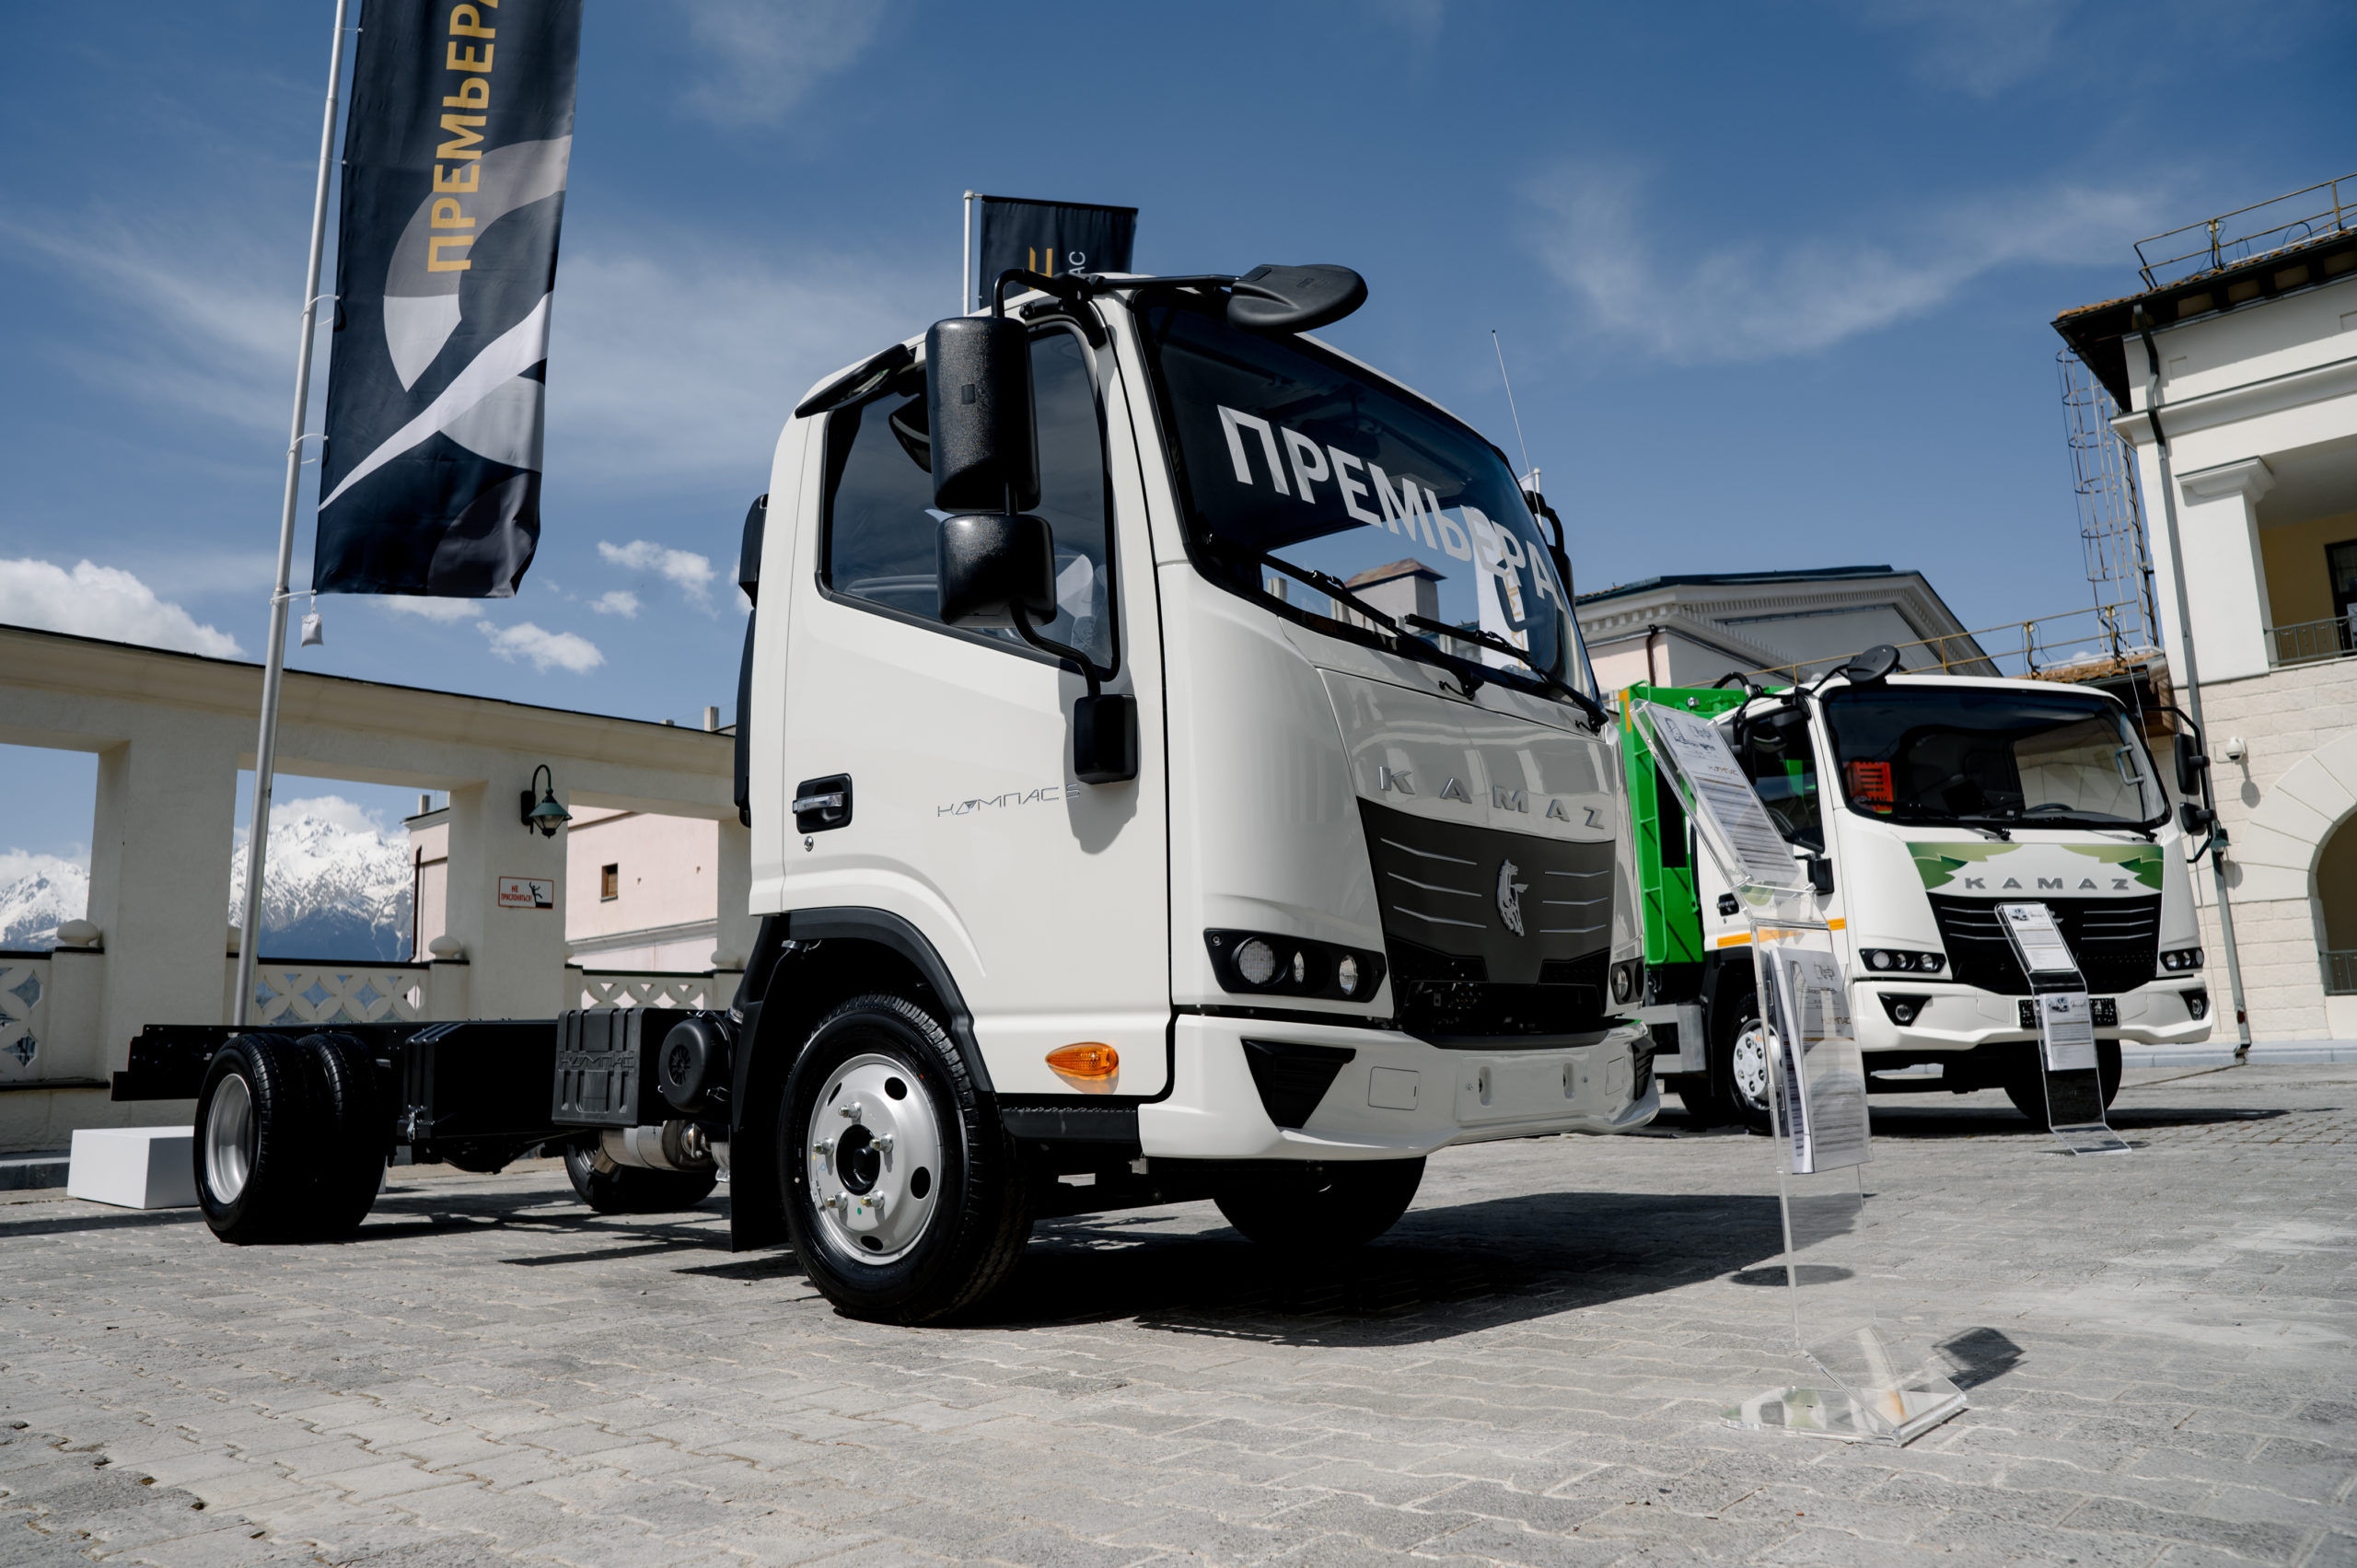 Представлен новый среднетоннажный грузовик Компас 5 с двигателем КАМАЗ-580